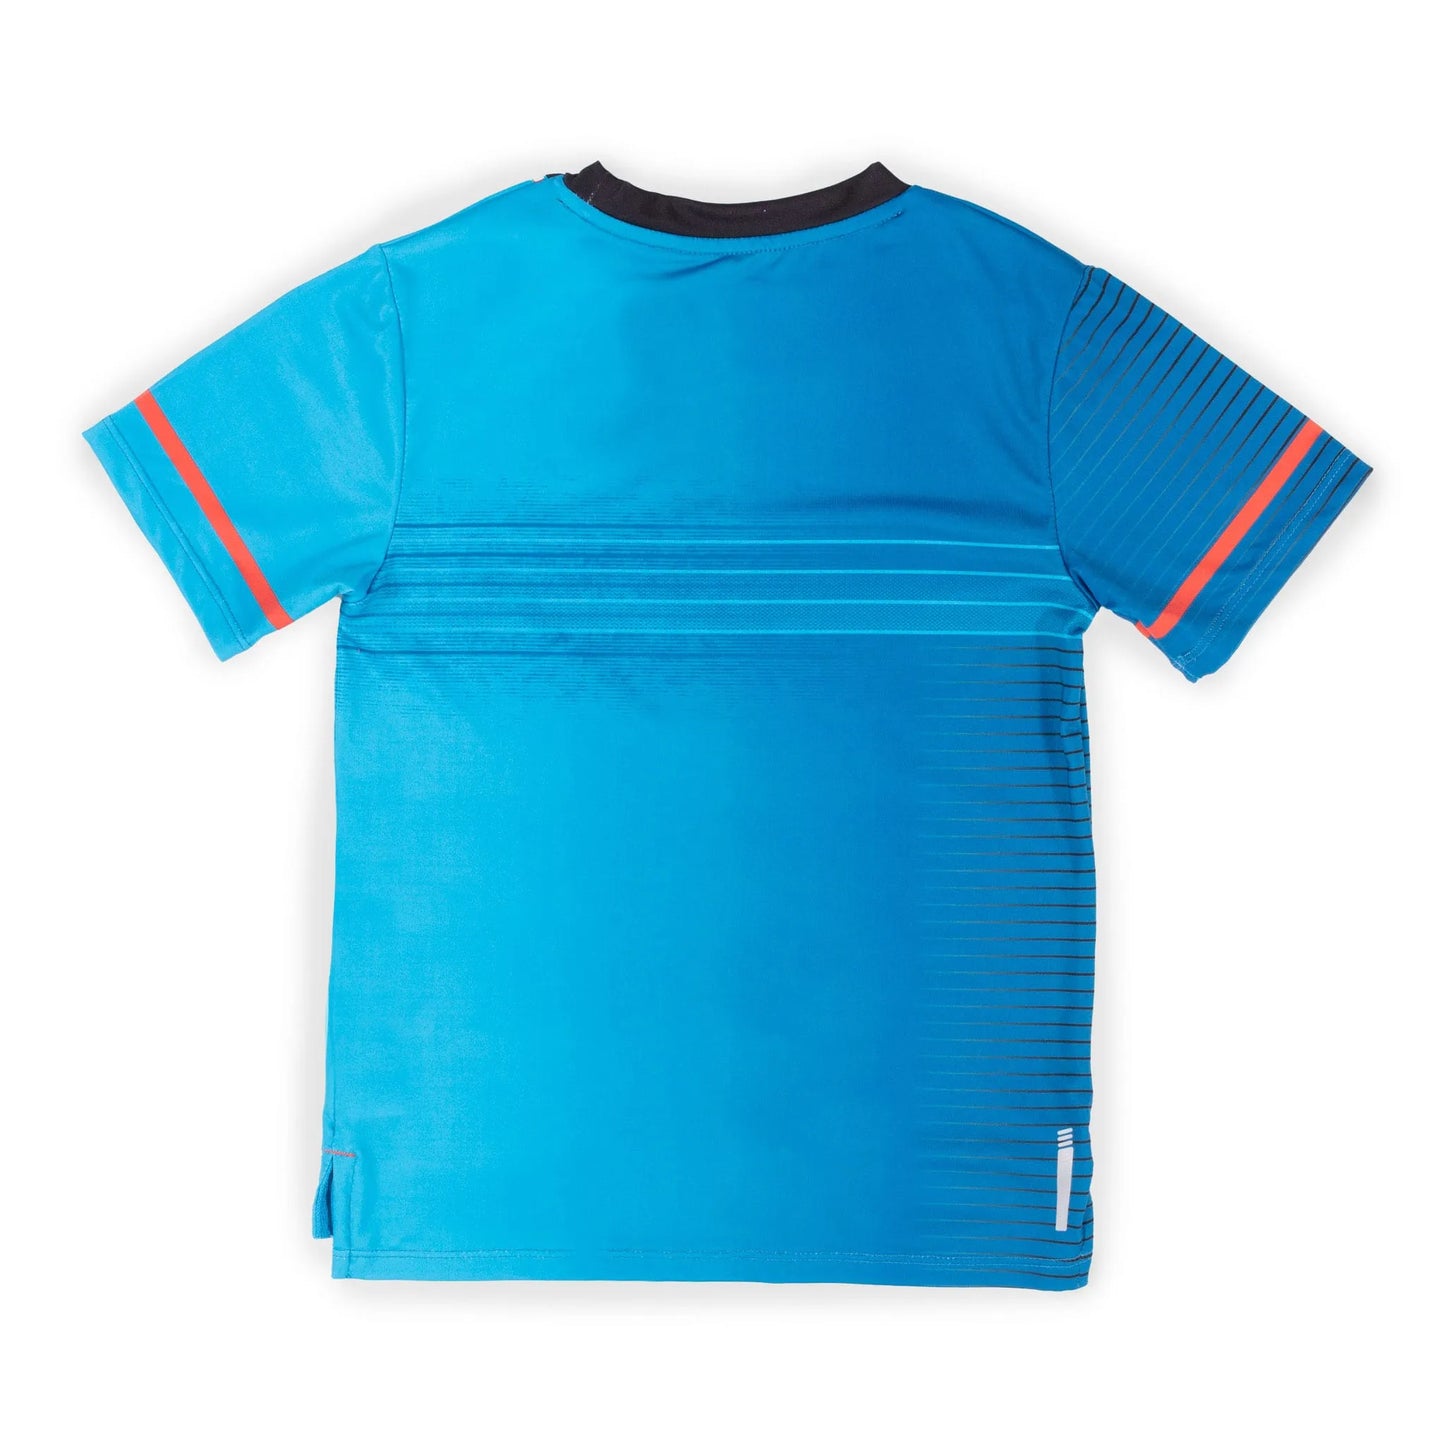 Boutique Petites Fleurs - T-shirt athlétique Bleu Droit Devant S23A81-05